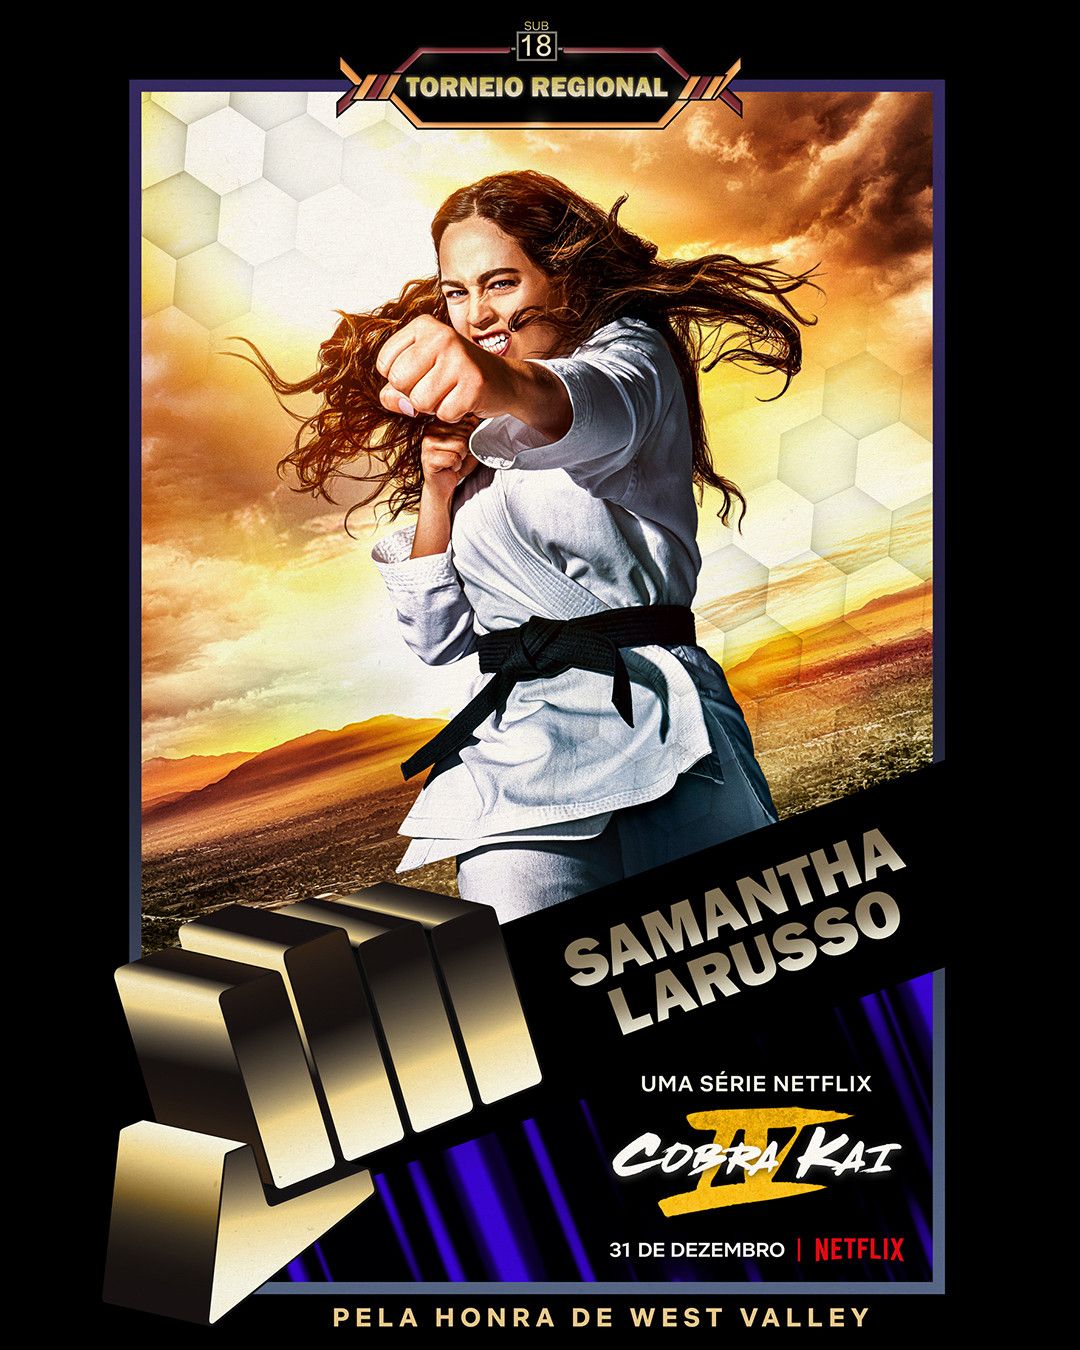 Samantha Cobra Kai character poster